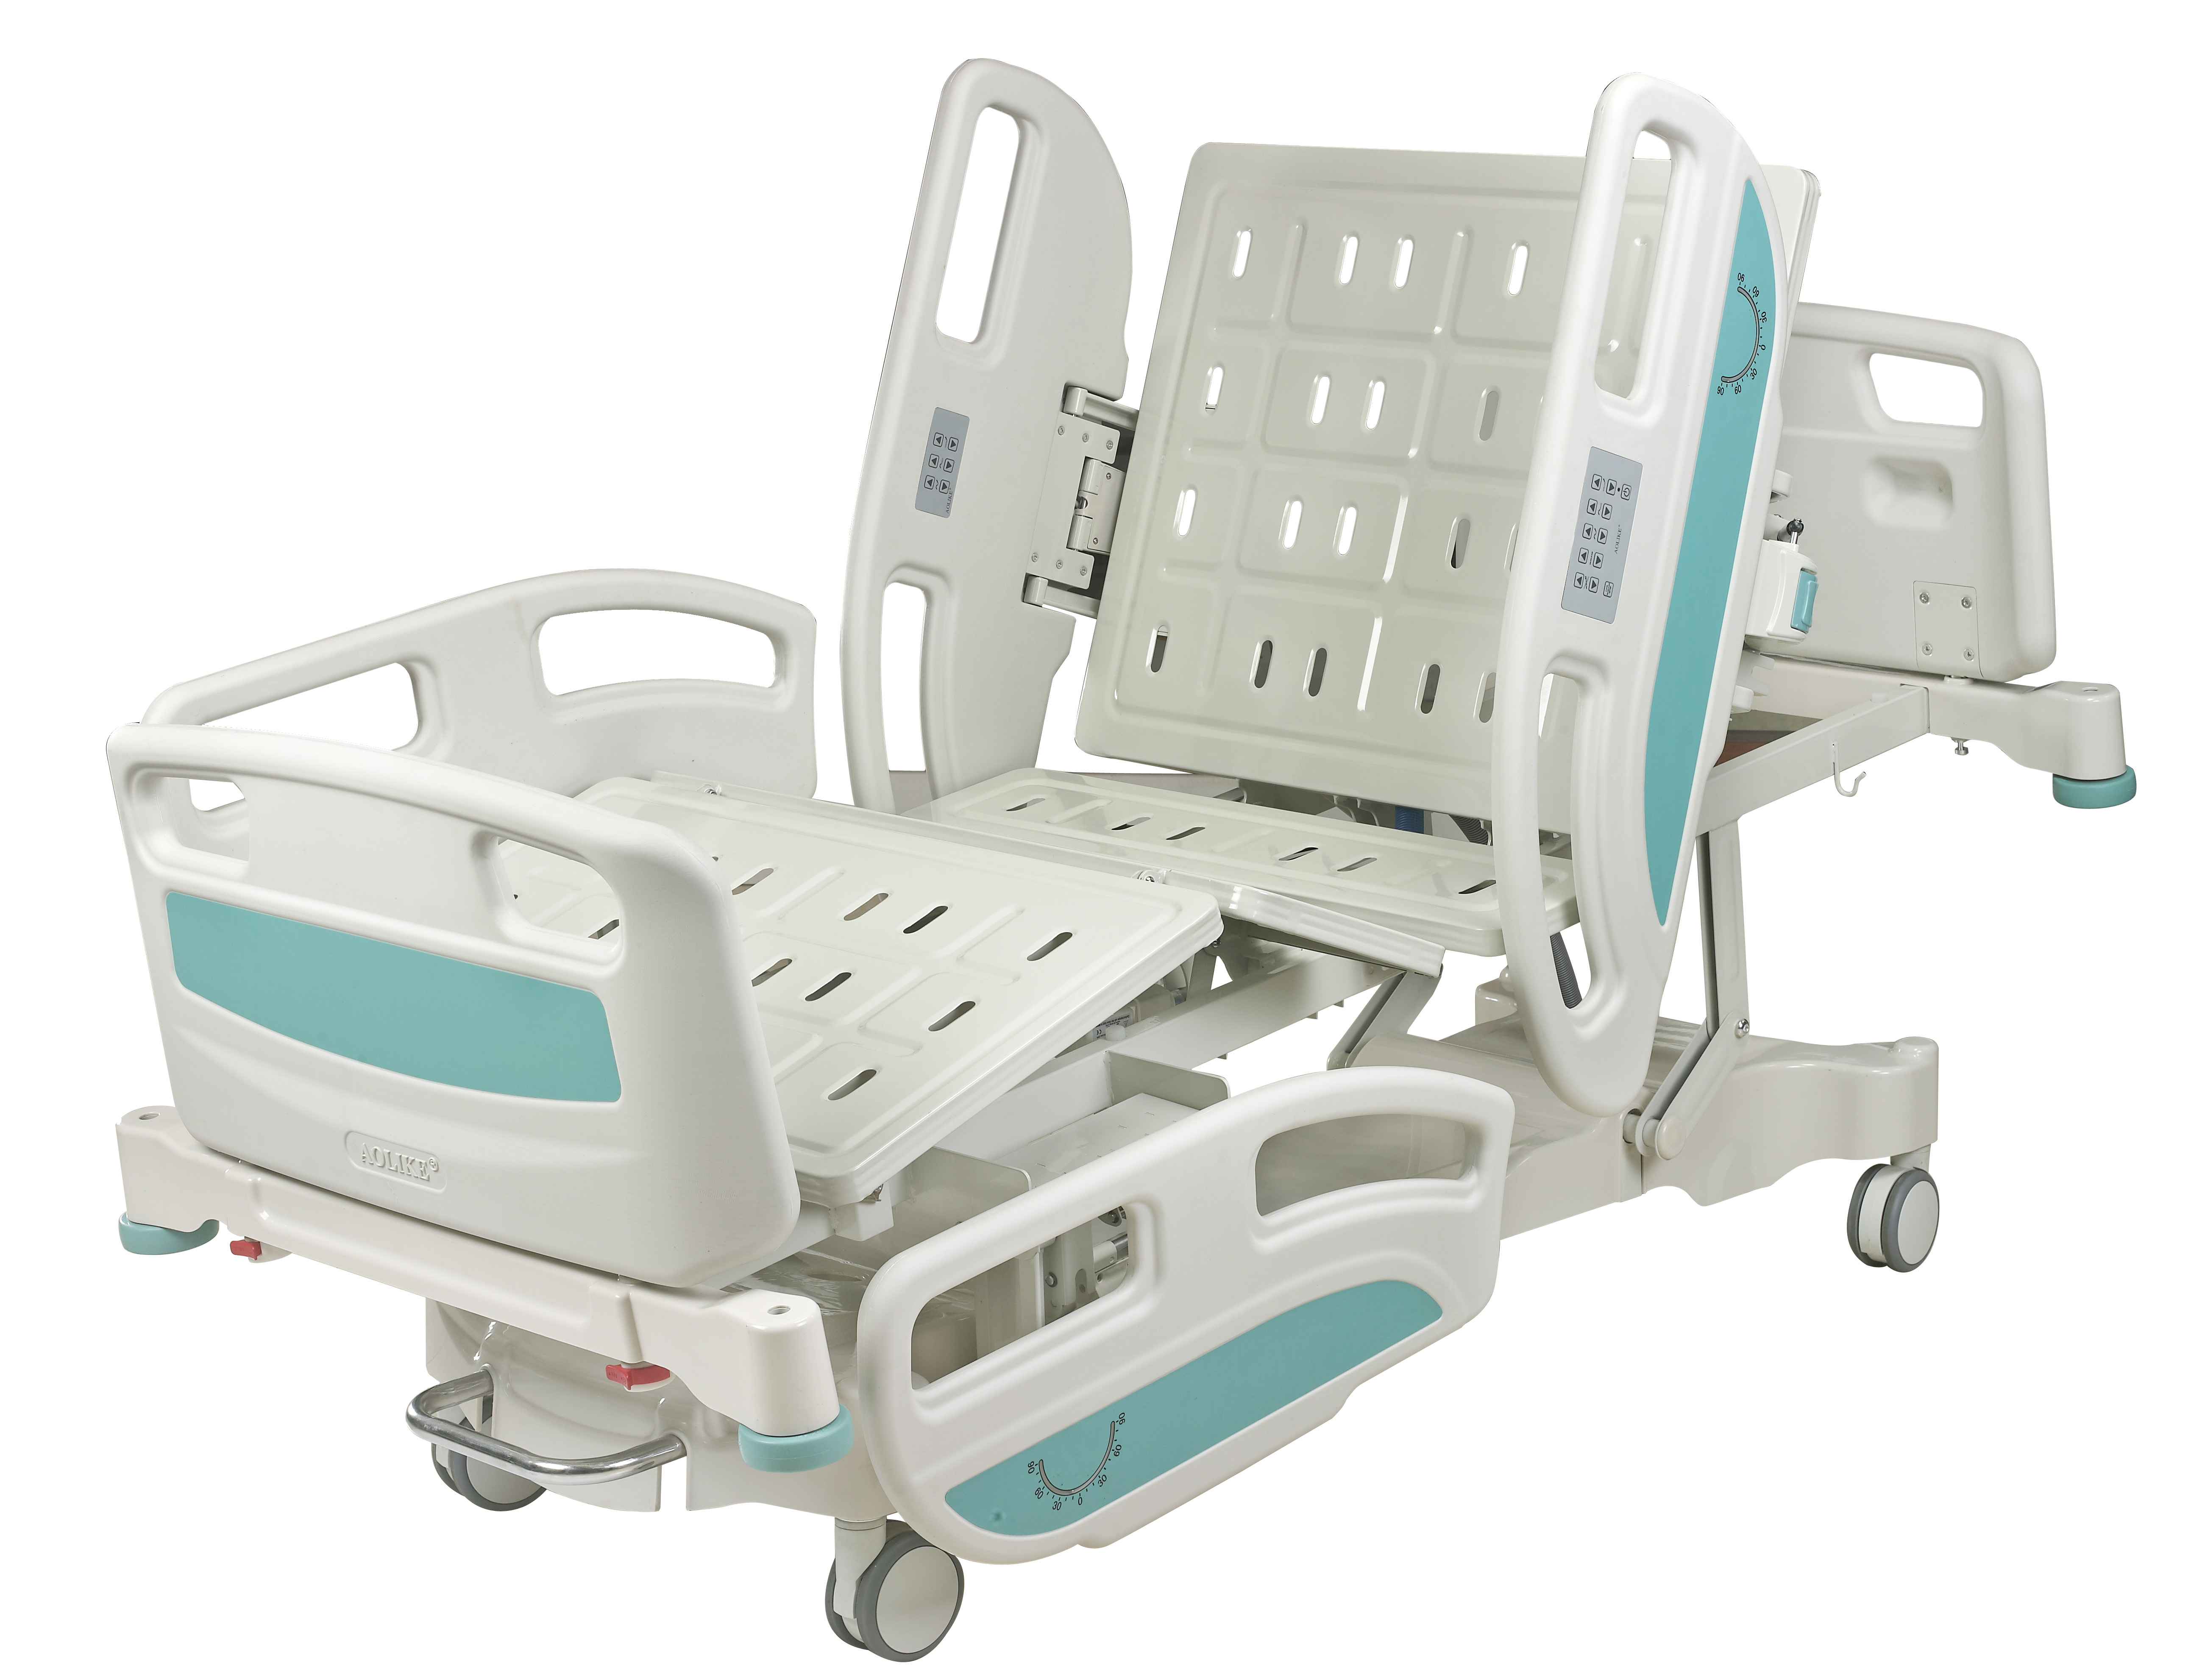 AOLIKE HOSPITAL ICU 5 FUNCIONES Cama de hospital eléctrica con función de RCP